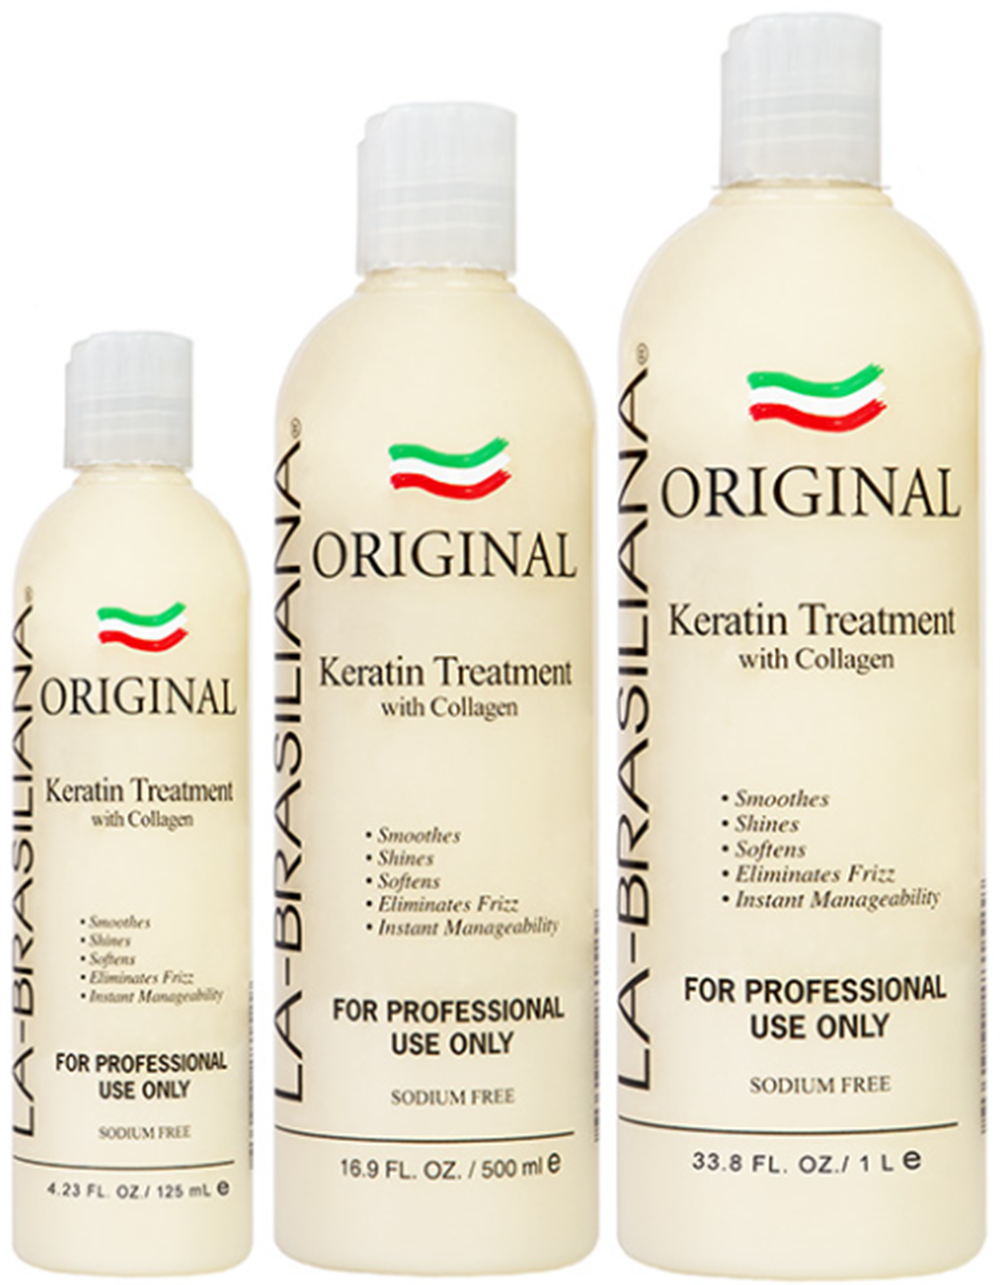 Original Keratin Treatment